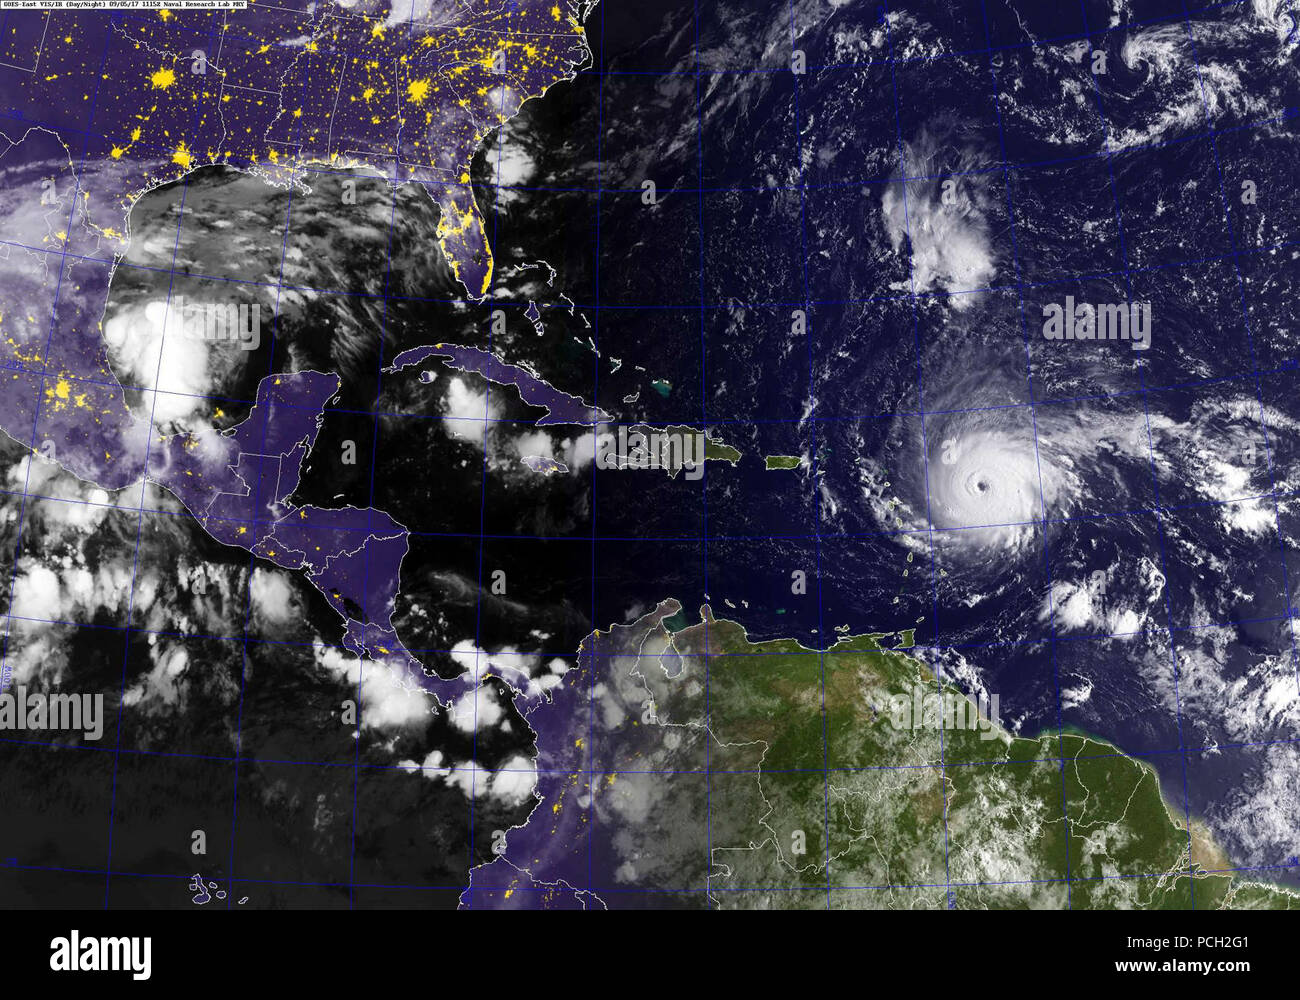 Océano Atlántico (Sept. 5, 2017) Una imagen del satélite GOES mostrando Irma de huracanes en el Océano Atlántico. La tormenta es un huracán de categoría 4 en la escala Saffir-Simpson. Los vientos del huracán. Vientos máximos sostenidos han aumentado a cerca de 150 mph (240 km/h) con rachas superiores. Algunas fluctuaciones en intensidad, probablemente durante el próximo día o dos, pero se proyecta que Irma siguen siendo un poderoso huracán de categoría 4. Los vientos con fuerza de huracán se extienden hacia afuera hasta 45 millas (75 km) desde el centro y tropical de los vientos con fuerza de tormenta se extienden hacia afuera hasta 140 millas (220 km). La presión central mínima estimada es de 937 MB (27. Foto de stock